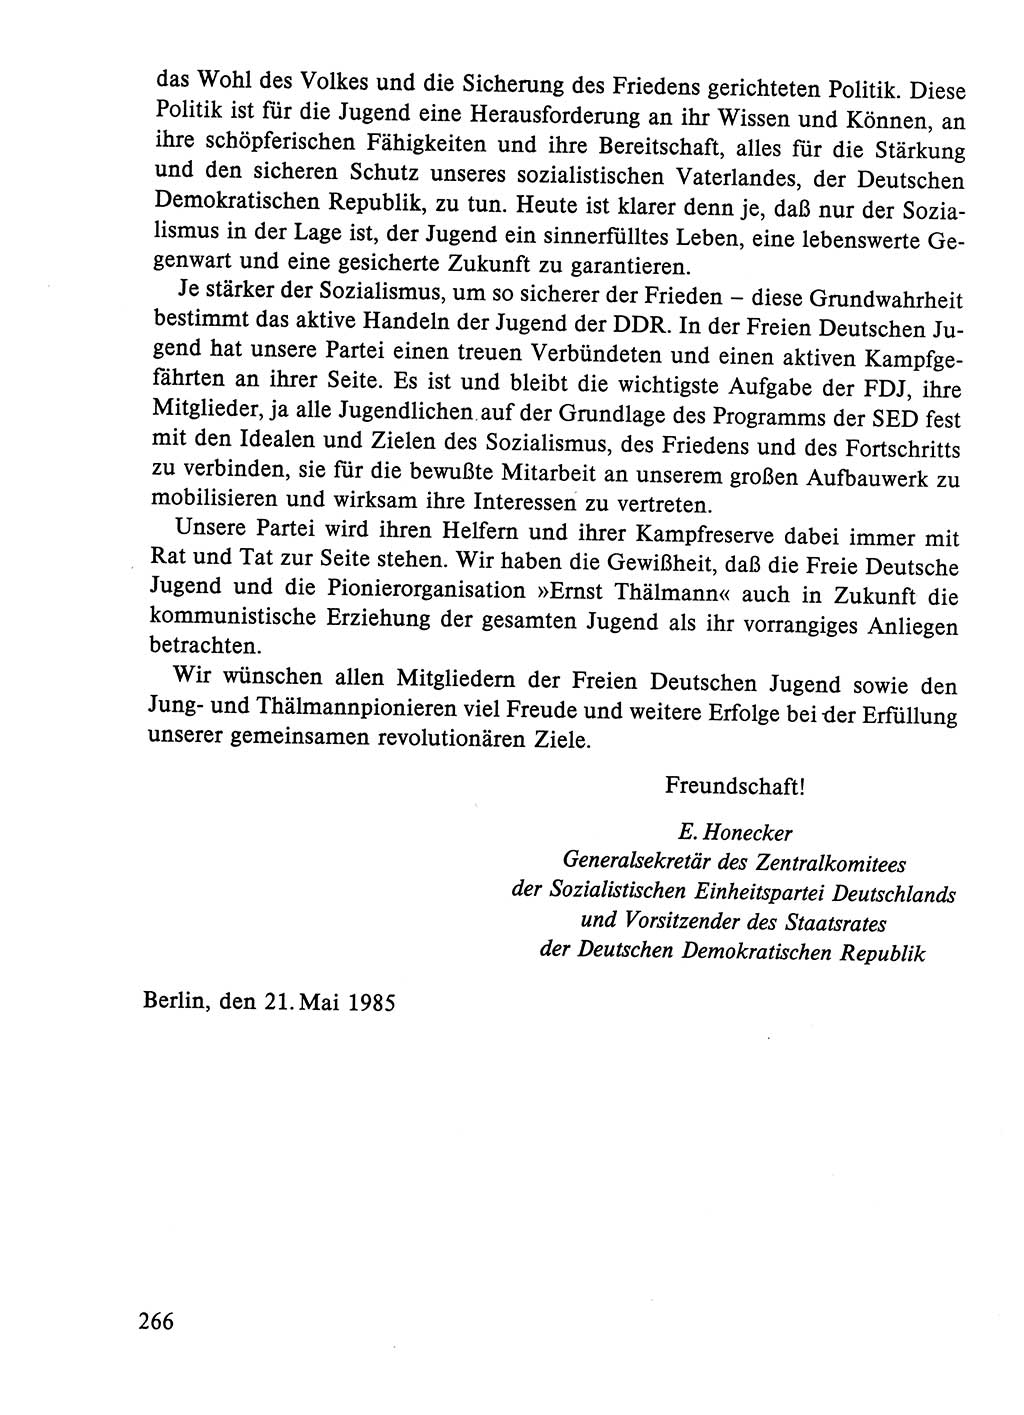 Dokumente der Sozialistischen Einheitspartei Deutschlands (SED) [Deutsche Demokratische Republik (DDR)] 1984-1985, Seite 161 (Dok. SED DDR 1984-1985, S. 161)